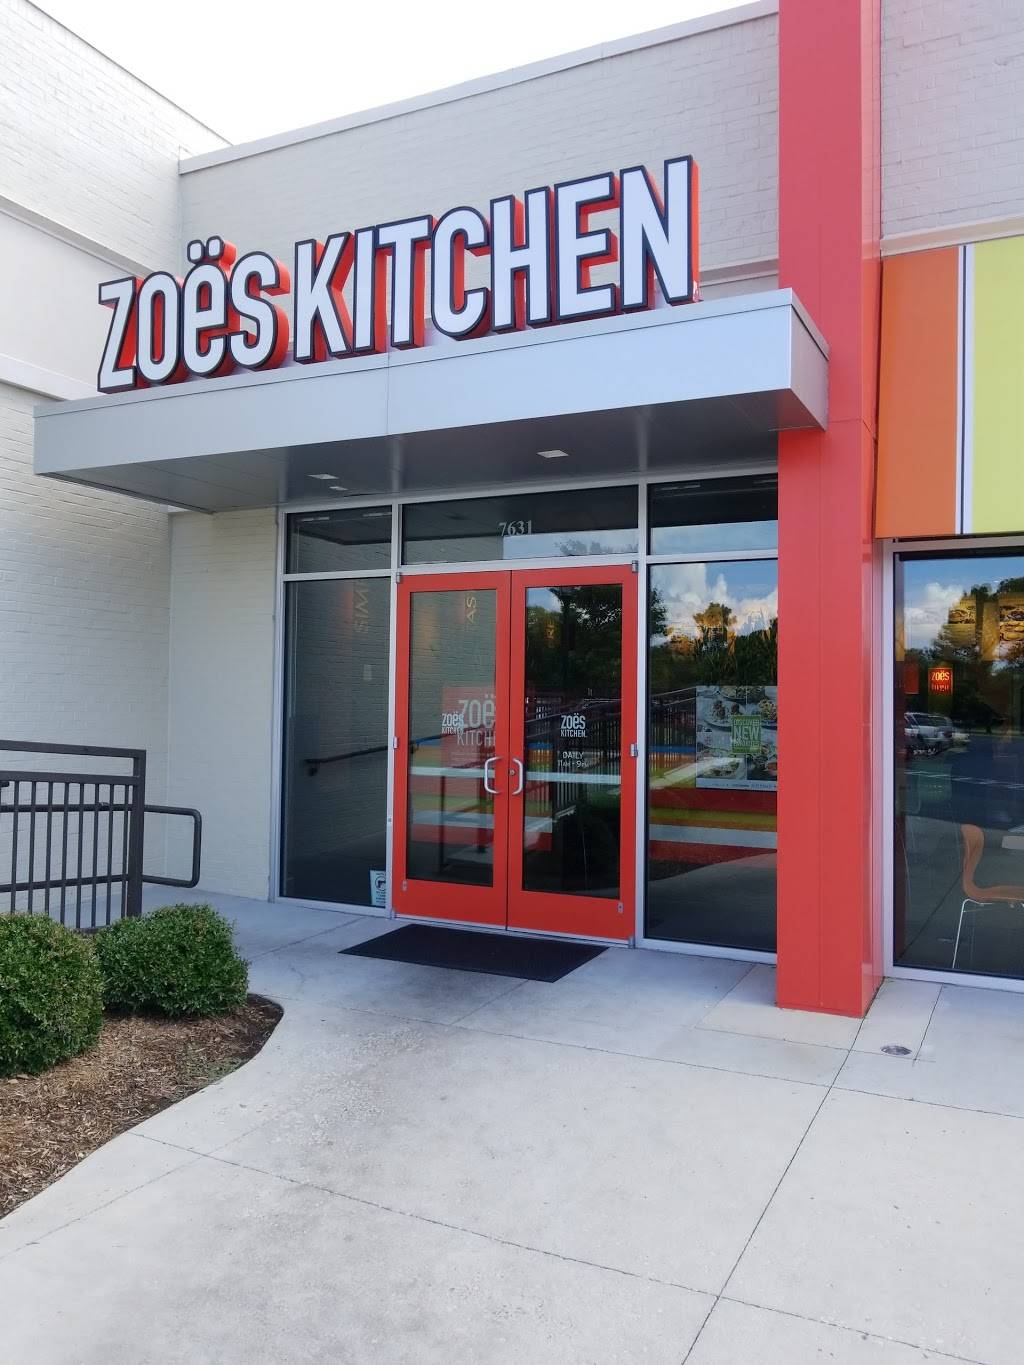 Zos Kitchen Restaurant 7631 Pineville Matthews Rd